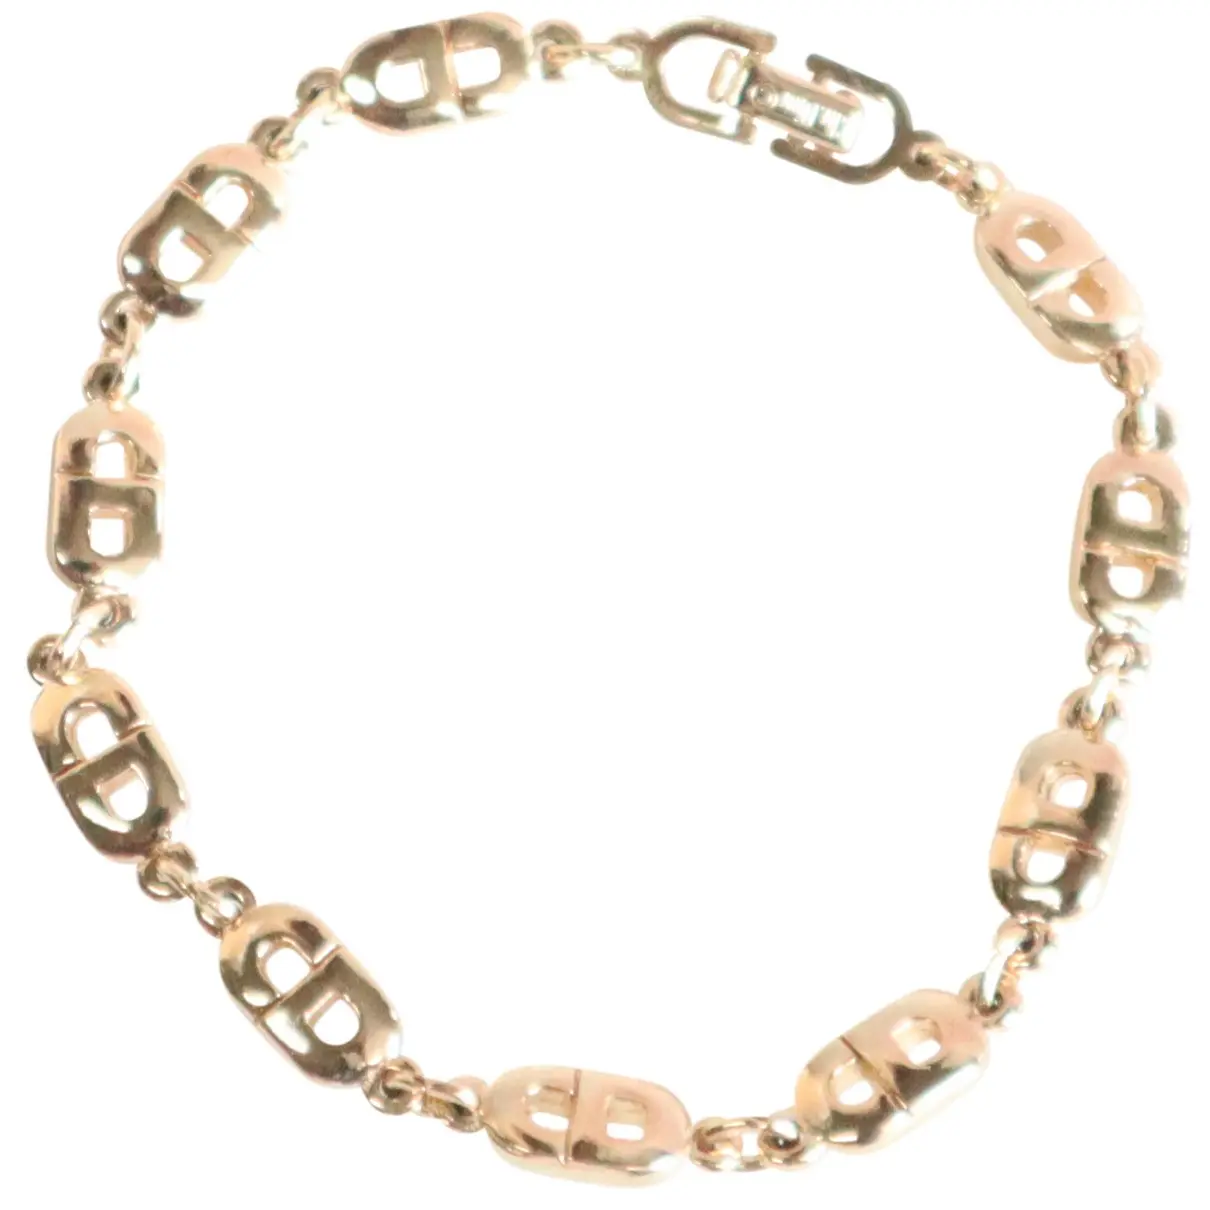 Clair D Lune bracelet Dior - Vintage